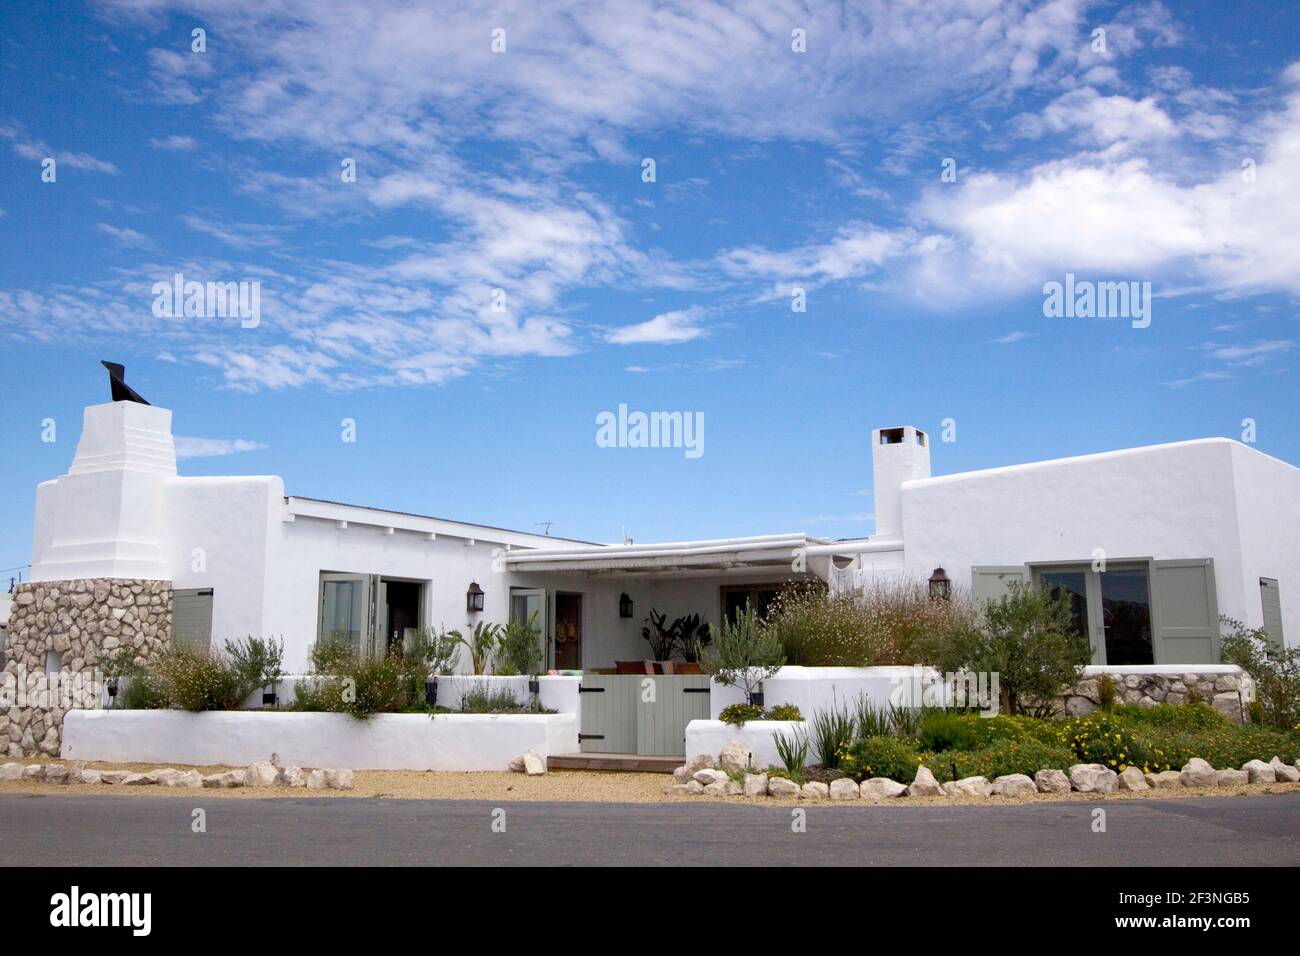 Traditionelles Strandhaus in Paternoster Südafrika mit weiß getünchten Wänden, Steinfirplace in einem Garten mit Olivenbäumen und indigineous Pflanzen gesetzt Stockfoto